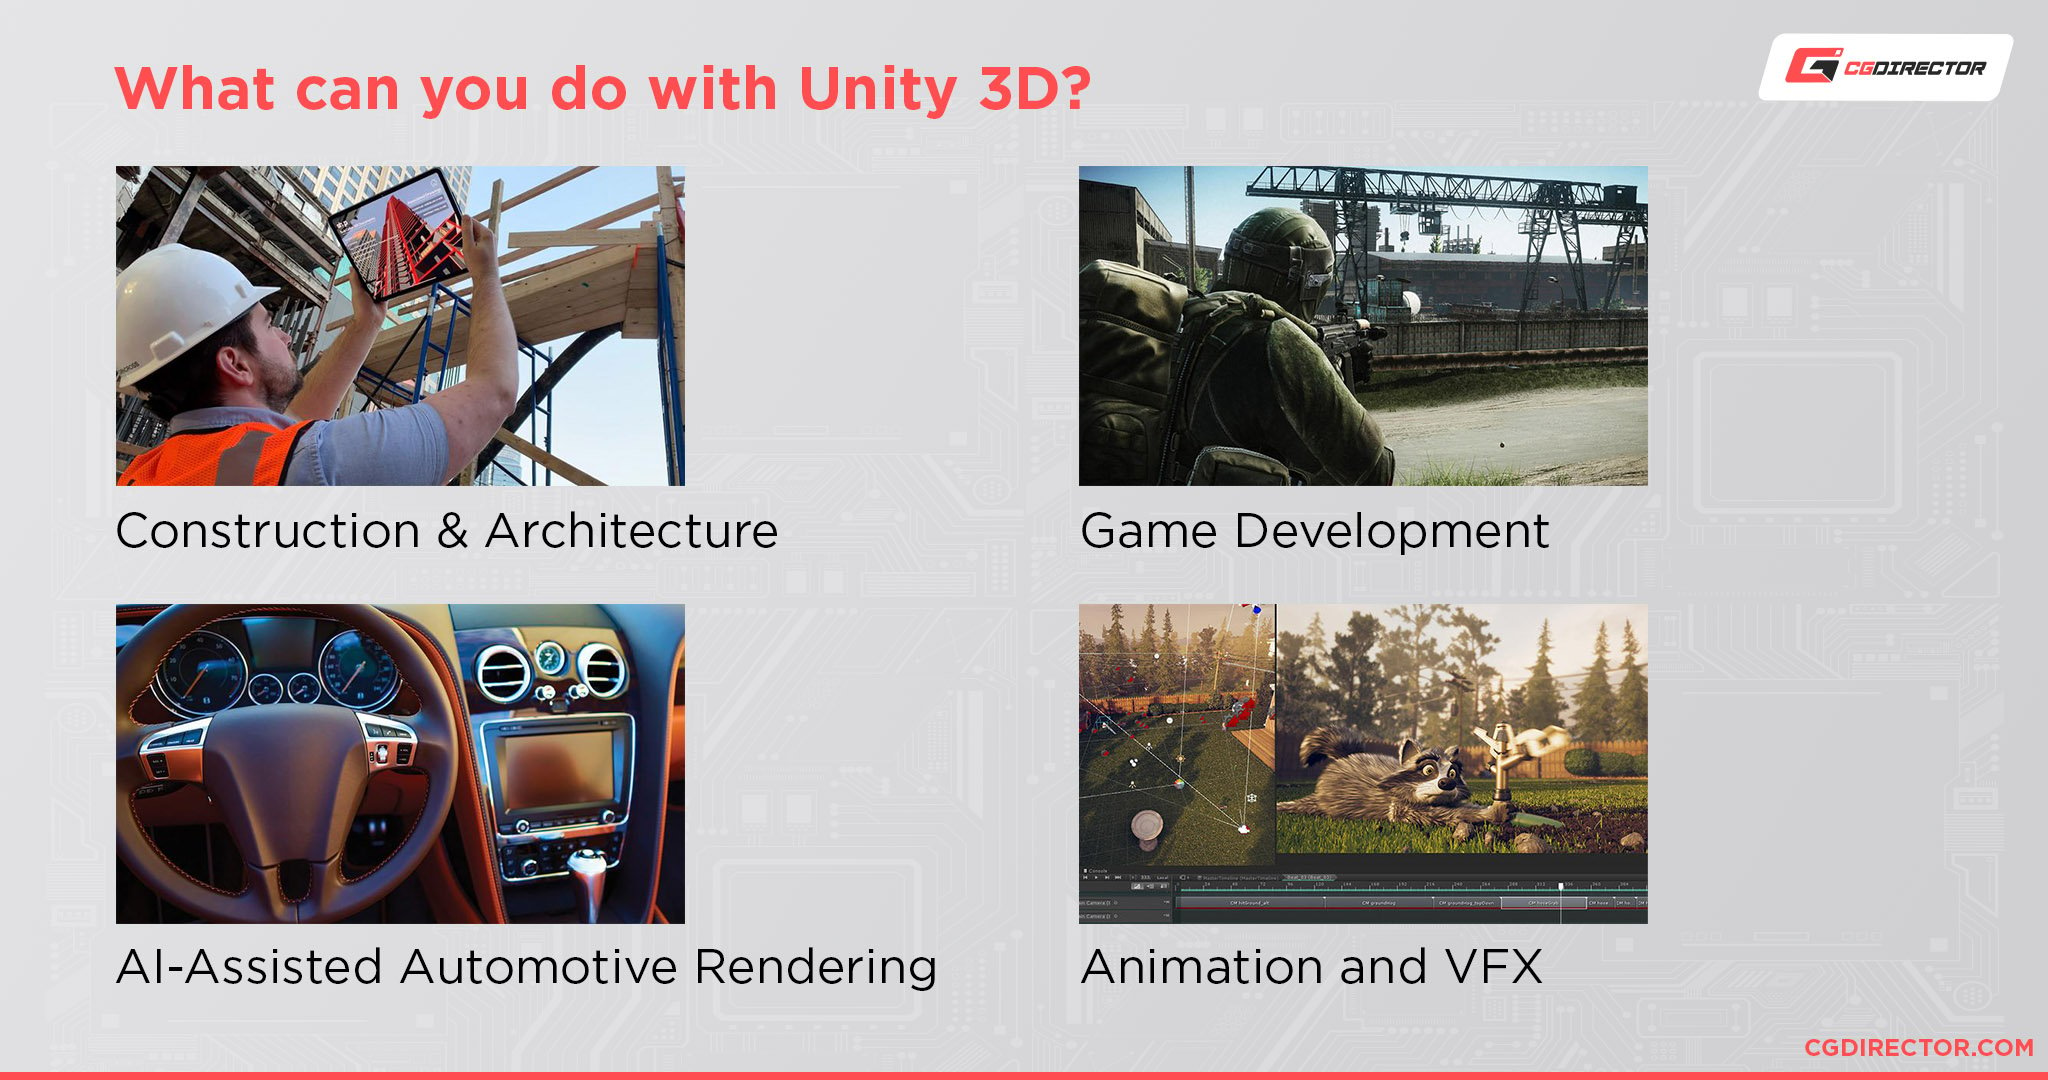 Unity 3D Applications